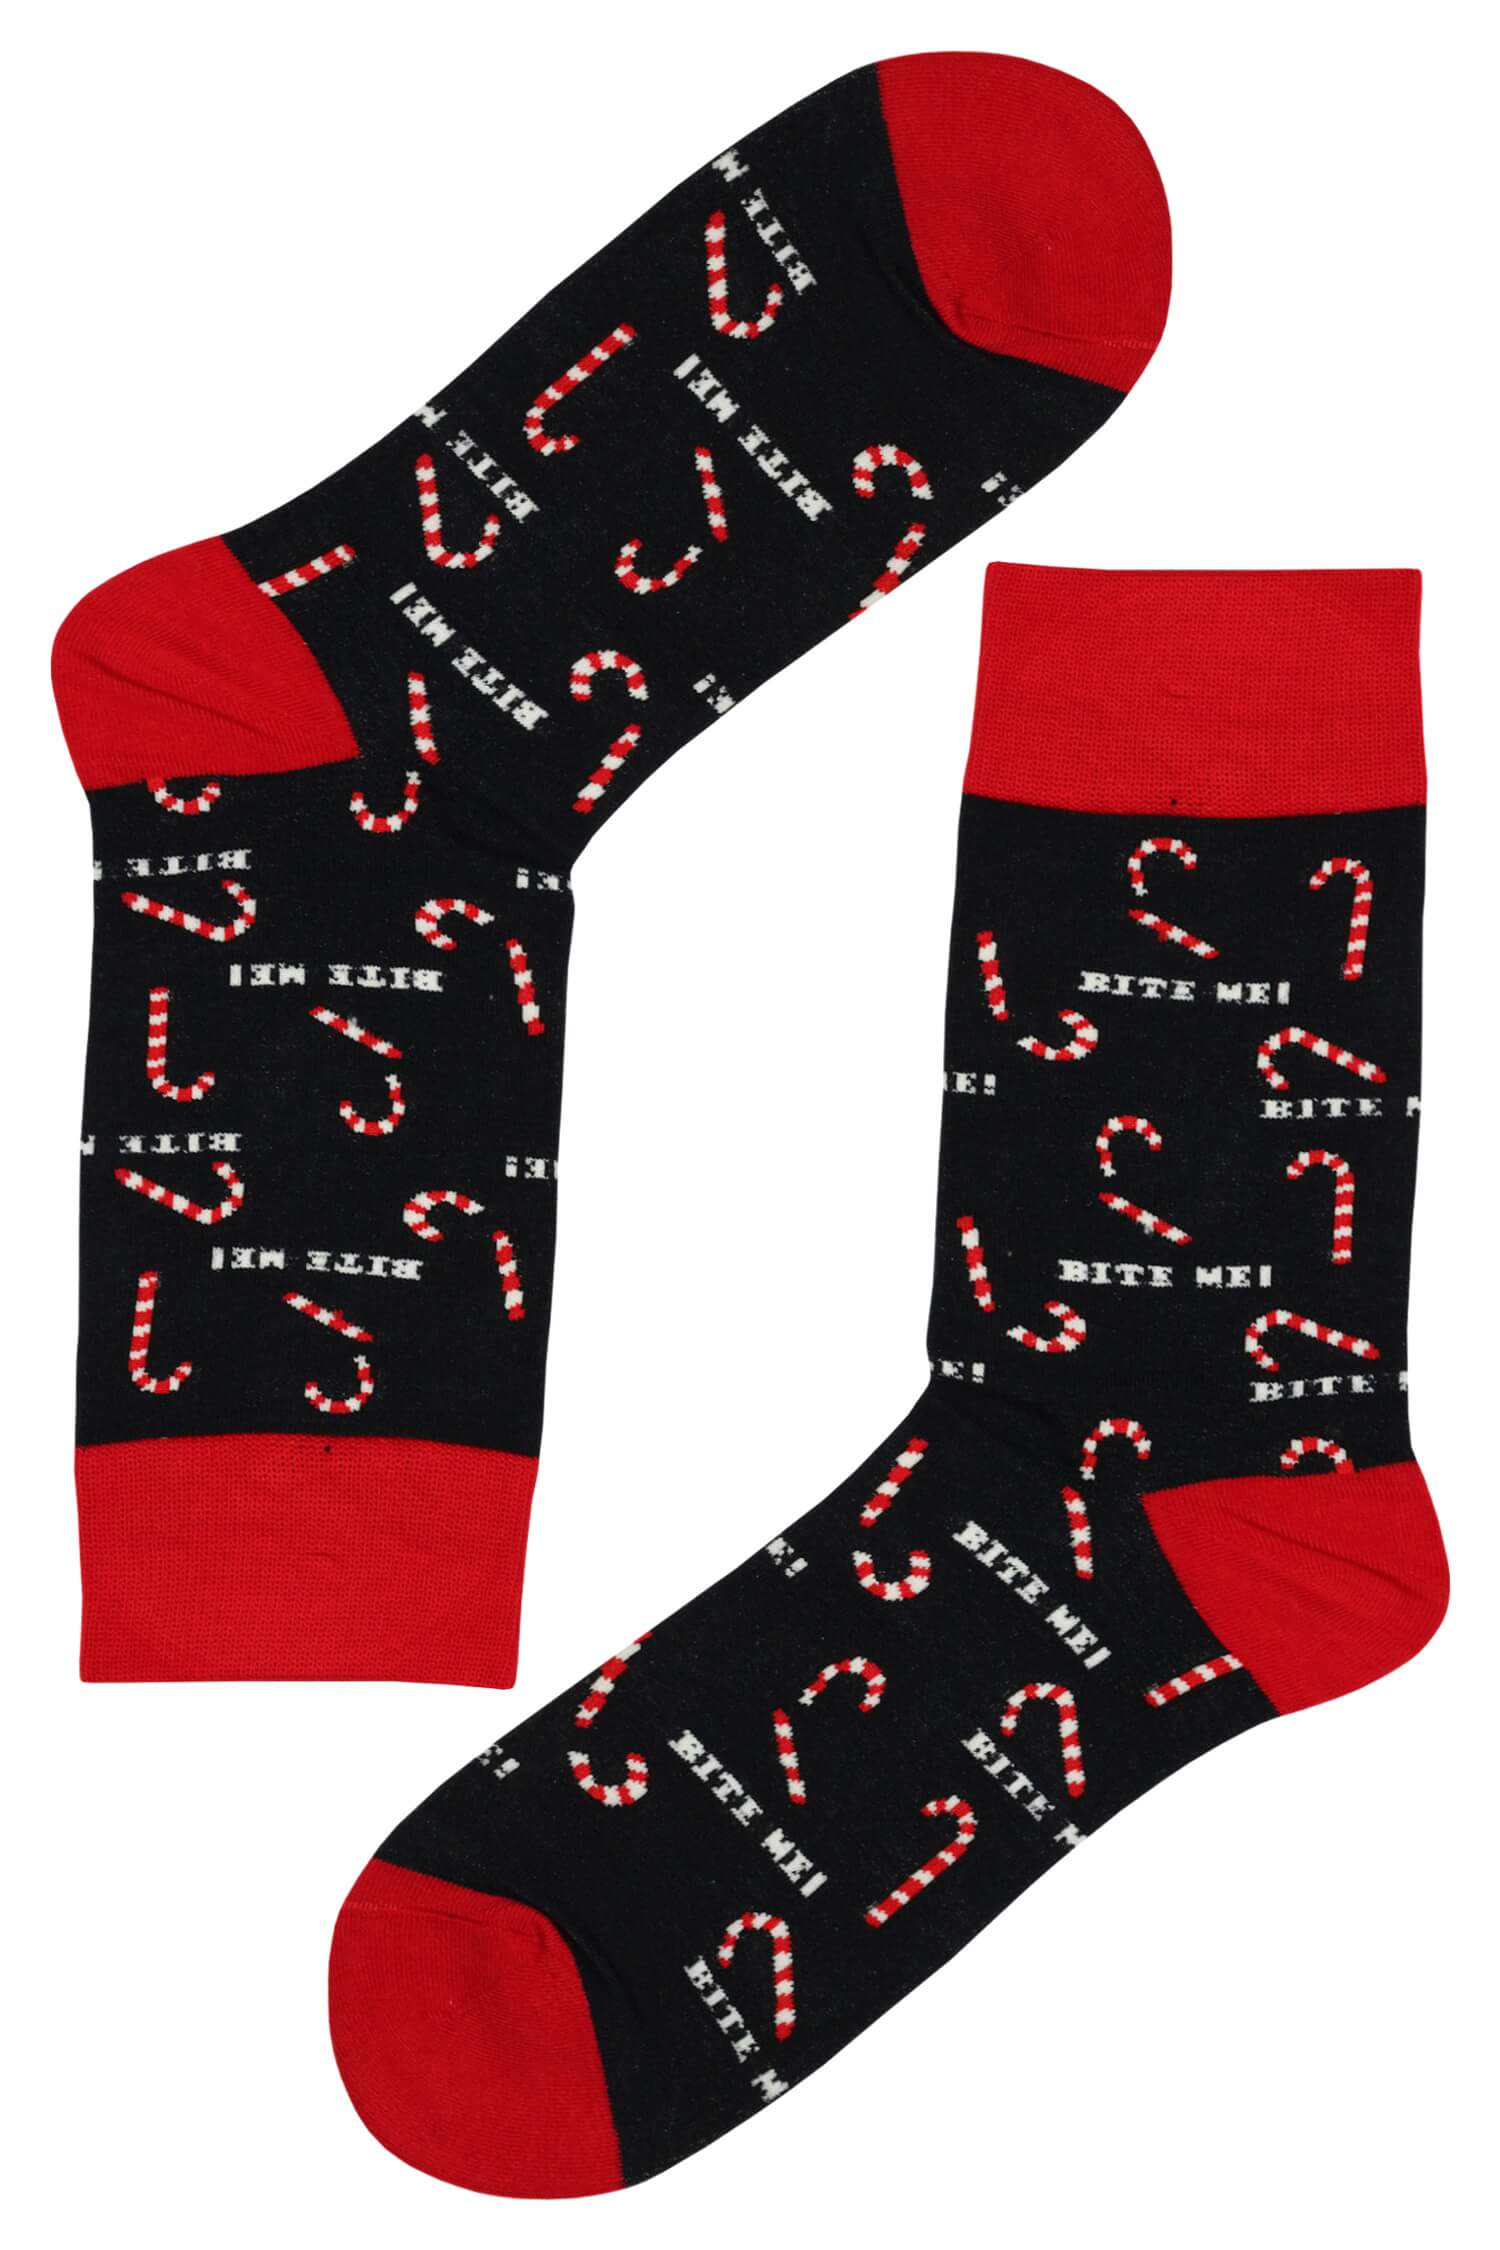 Pánské vánoční ponožky Vánoční hole 39-42 tmavě modrá